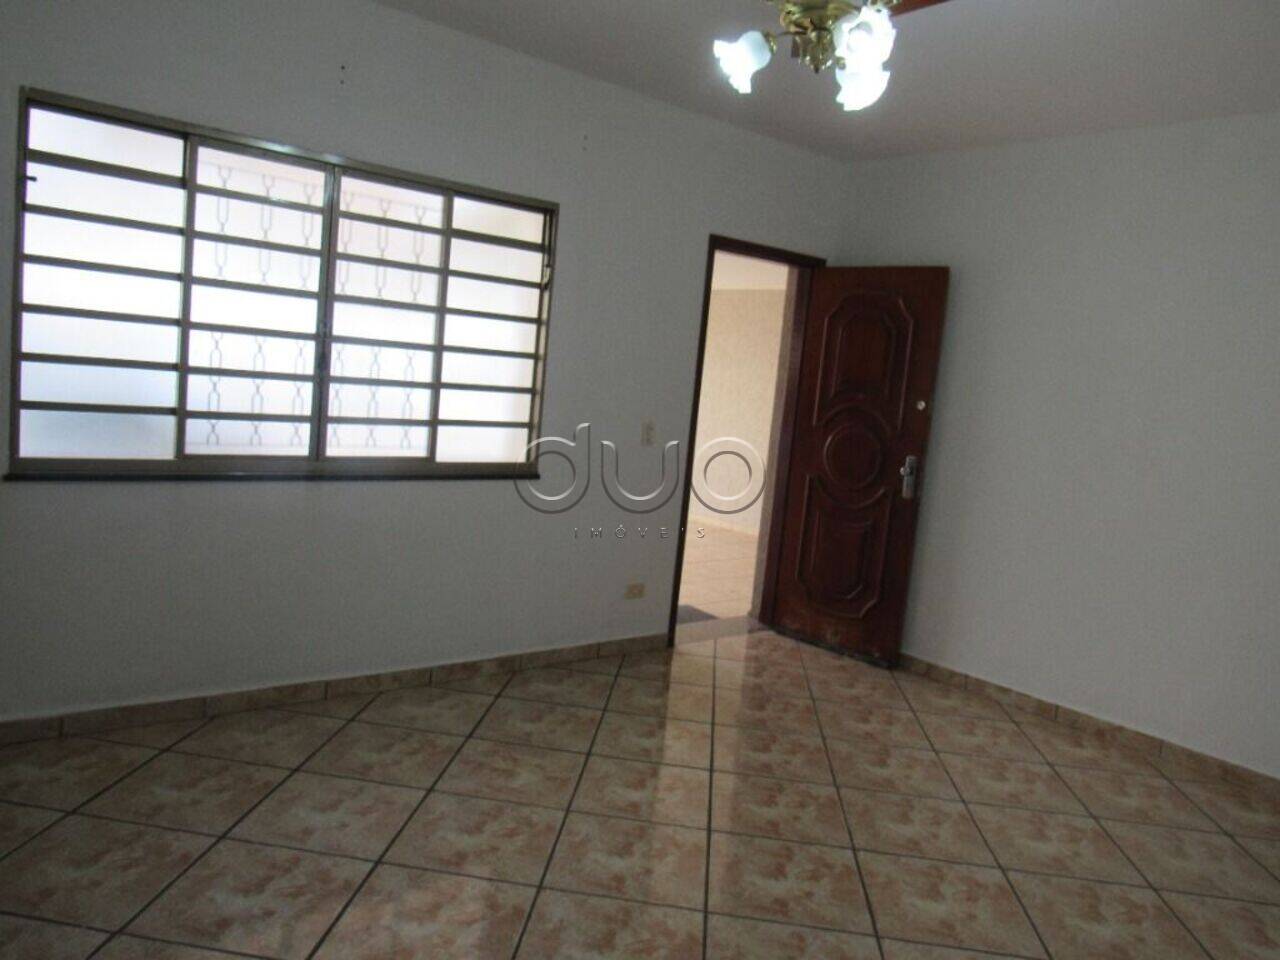 Casa com 3 dormitórios à venda, 123 m² por R$ 465.000 - Jardim Monumento - Piracicaba/SP